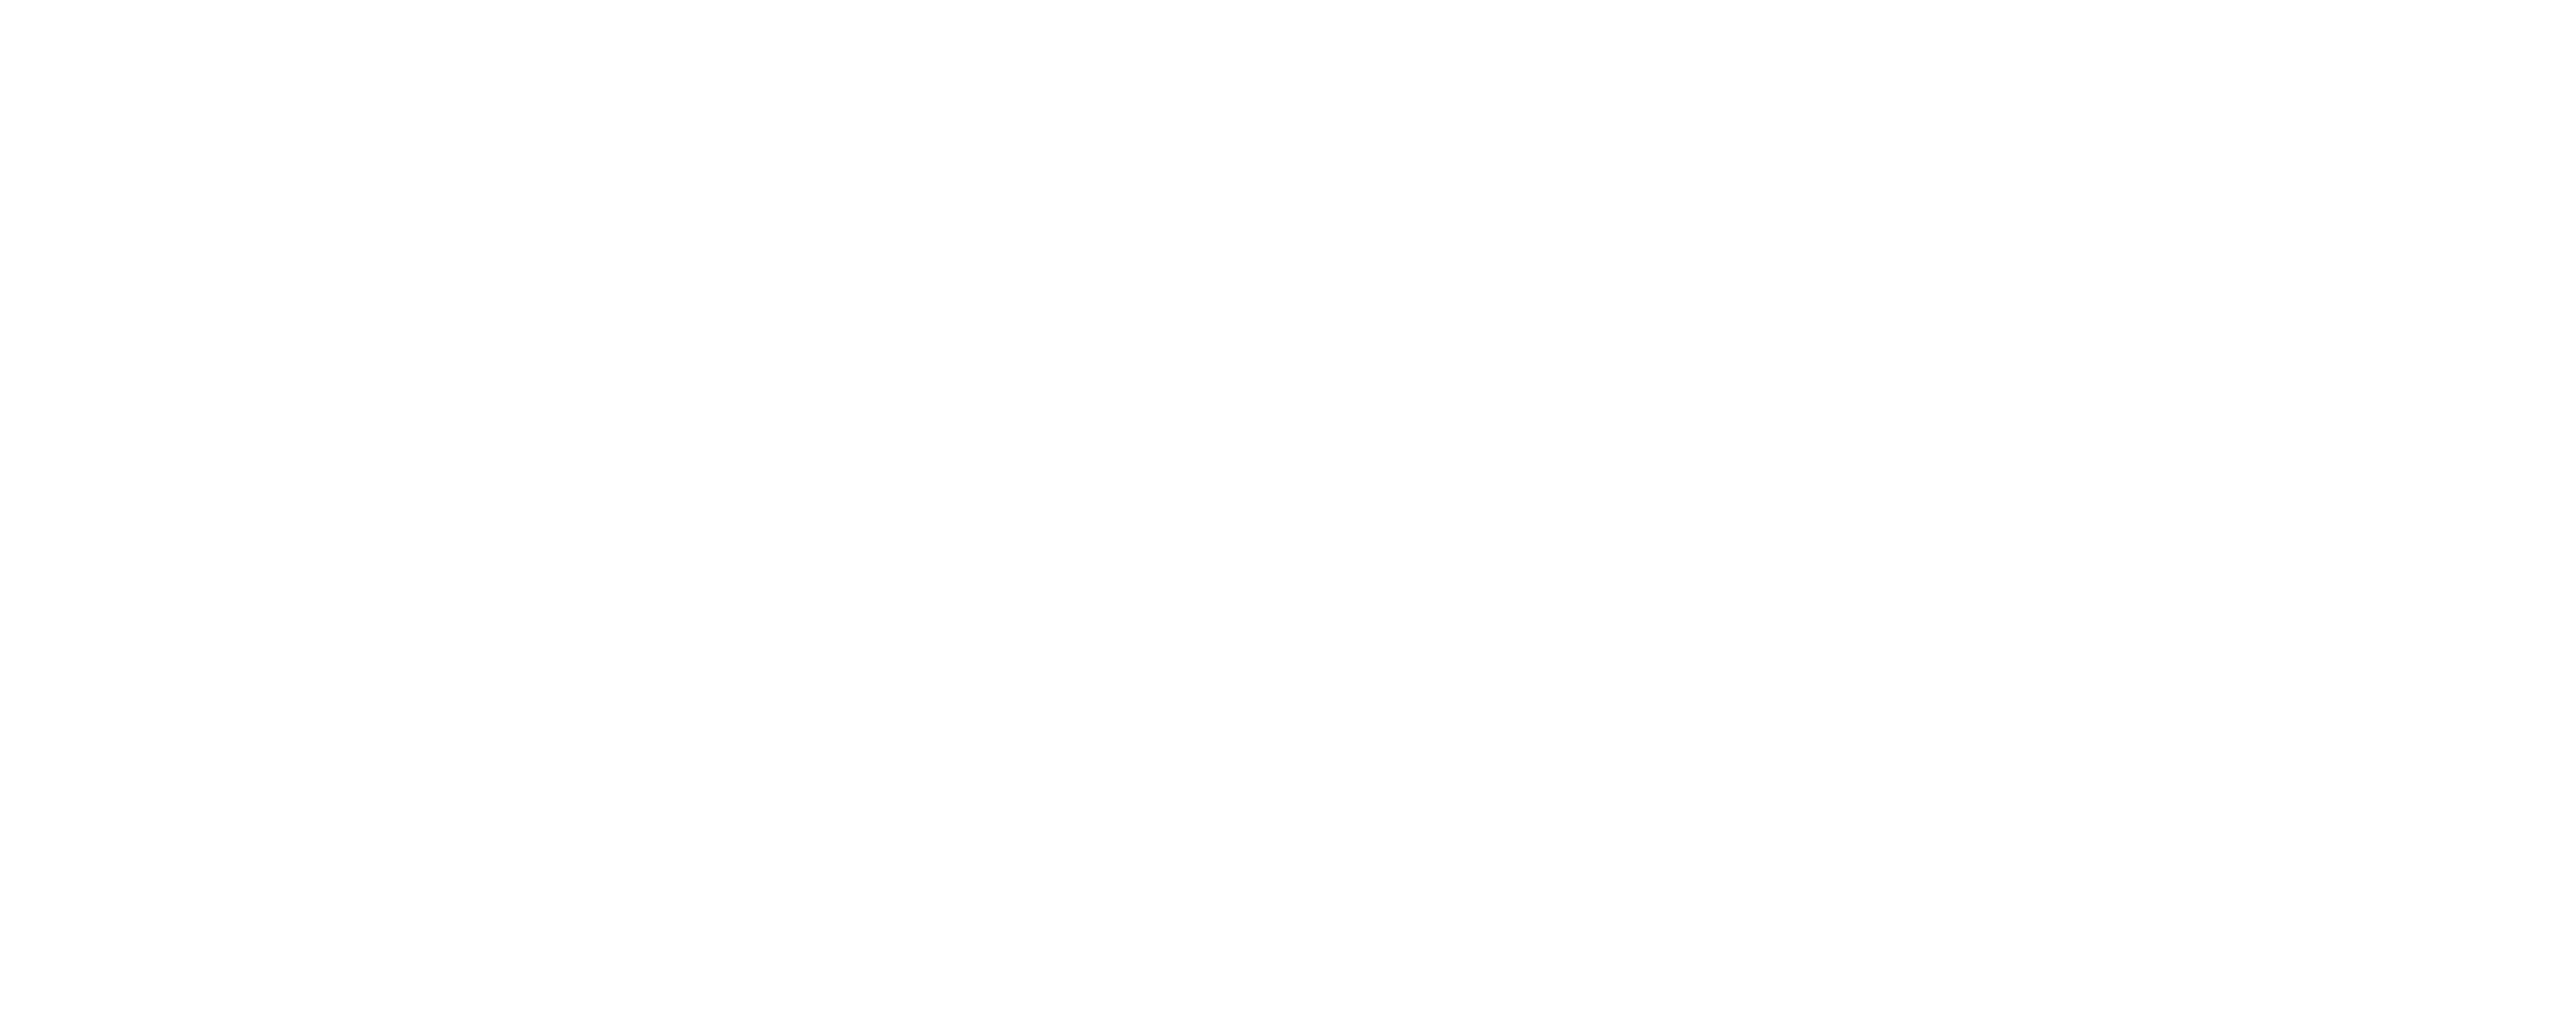 Hunters Agency & Co - 